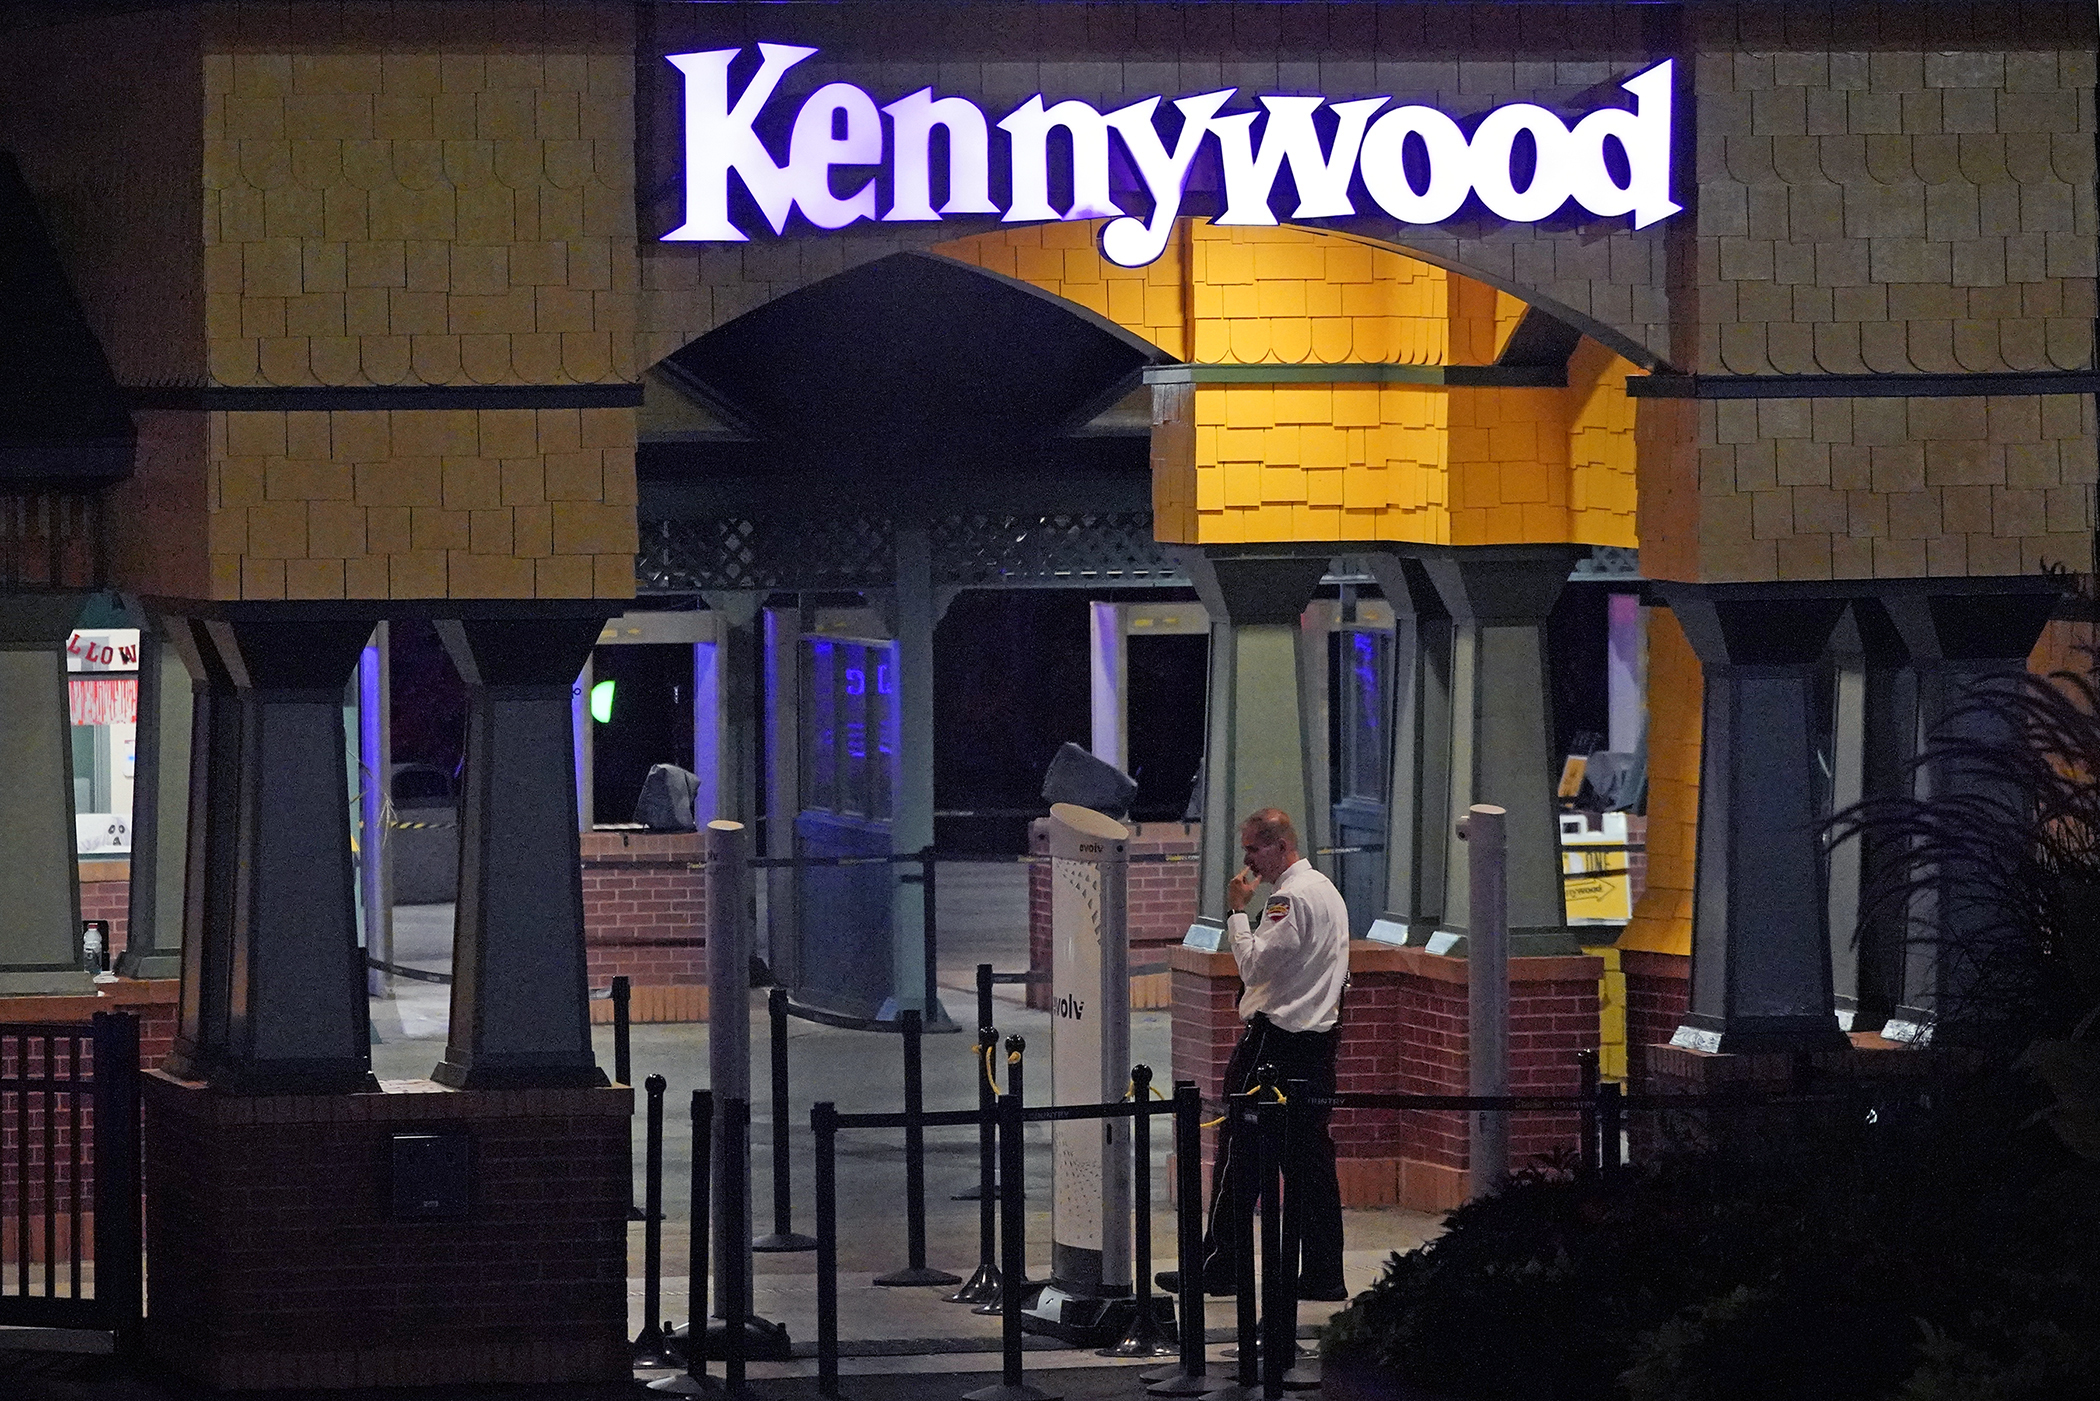 Un guardia de seguridad de Kennywood Park se encuentra en la entrada principal del parque de diversiones en West Mifflin, Pensilvania, la madrugada del domingo 25 de septiembre de 2022.  (AP Foto/Gene J. Puskar)

